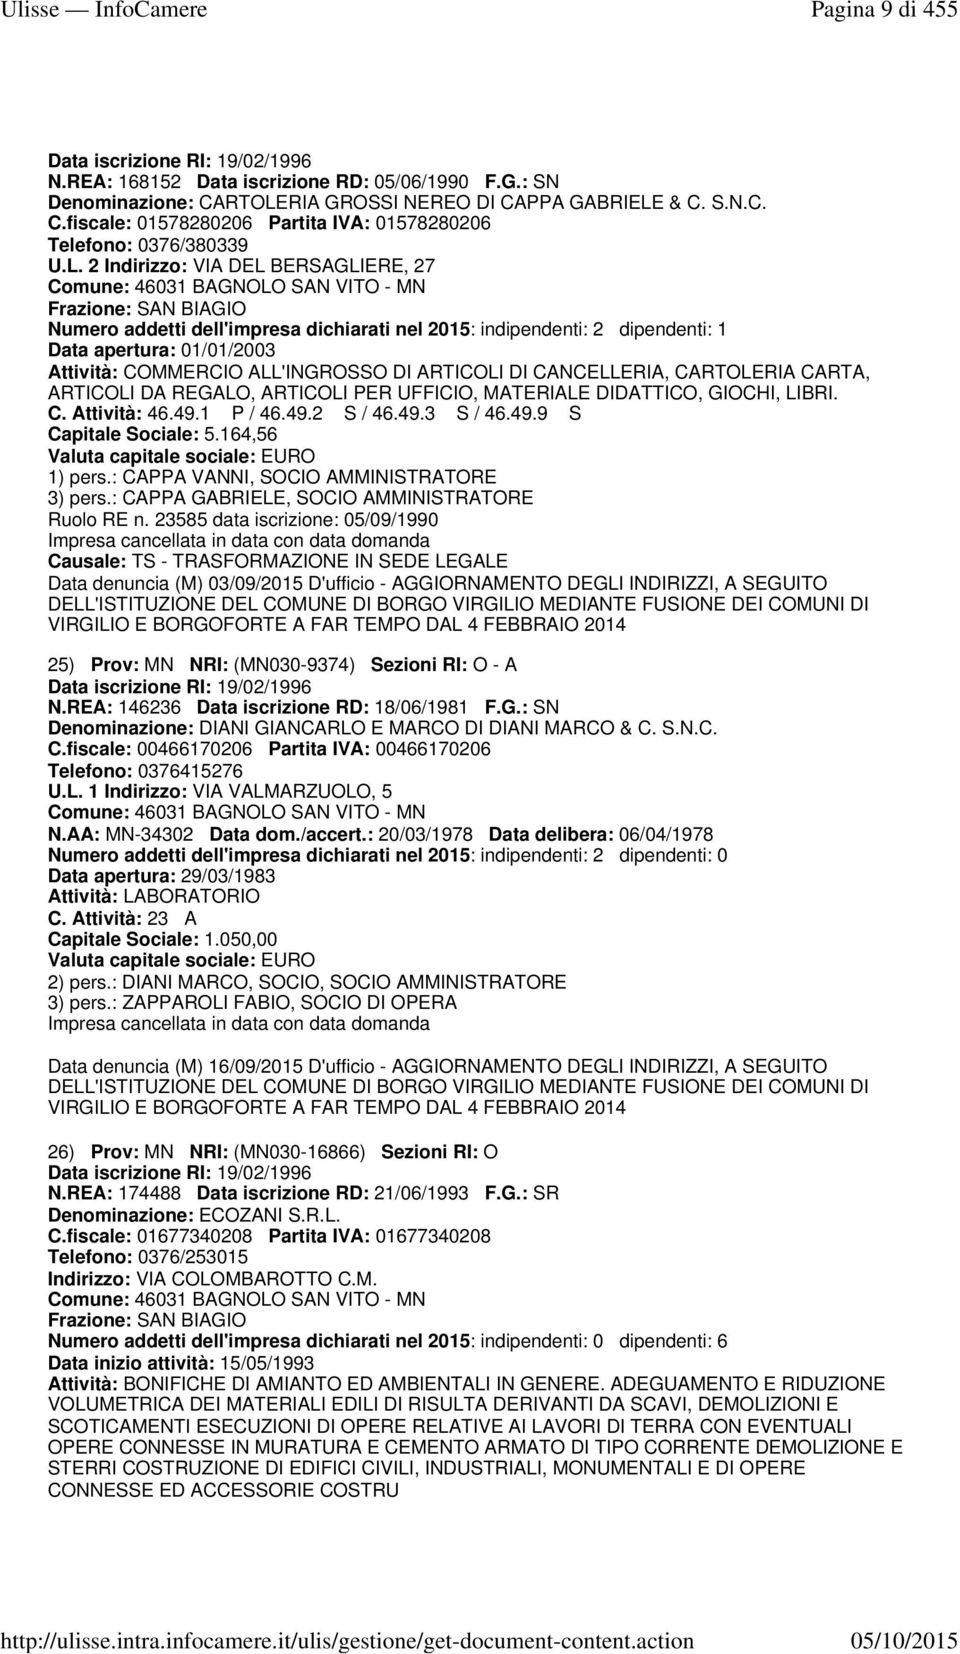 01/01/2003 Attività: COMMERCIO ALL'INGROSSO DI ARTICOLI DI CANCELLERIA, CARTOLERIA CARTA, ARTICOLI DA REGALO, ARTICOLI PER UFFICIO, MATERIALE DIDATTICO, GIOCHI, LIBRI. C. Attività: 46.49.1 P / 46.49.2 S / 46.